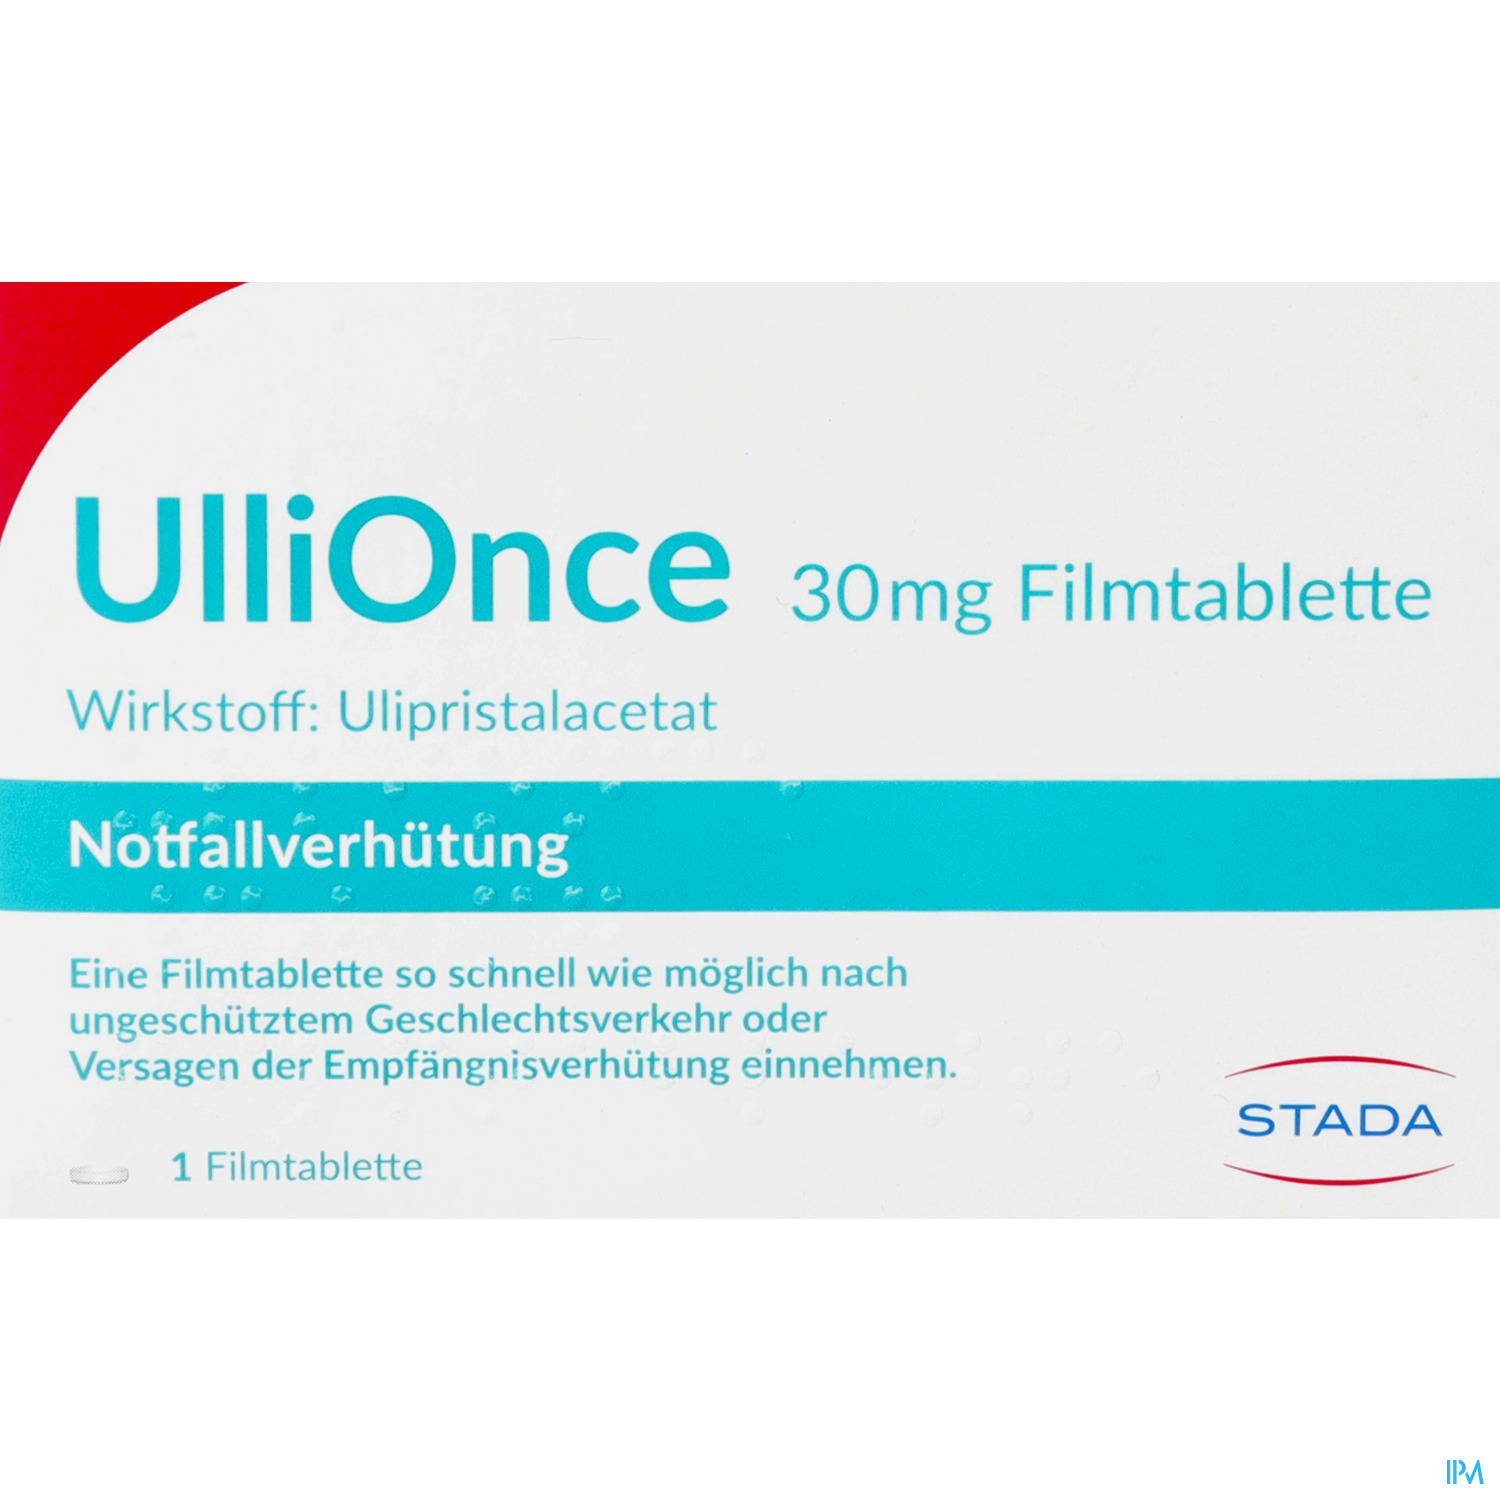 UlliOnce 30 mg - Filmtablette